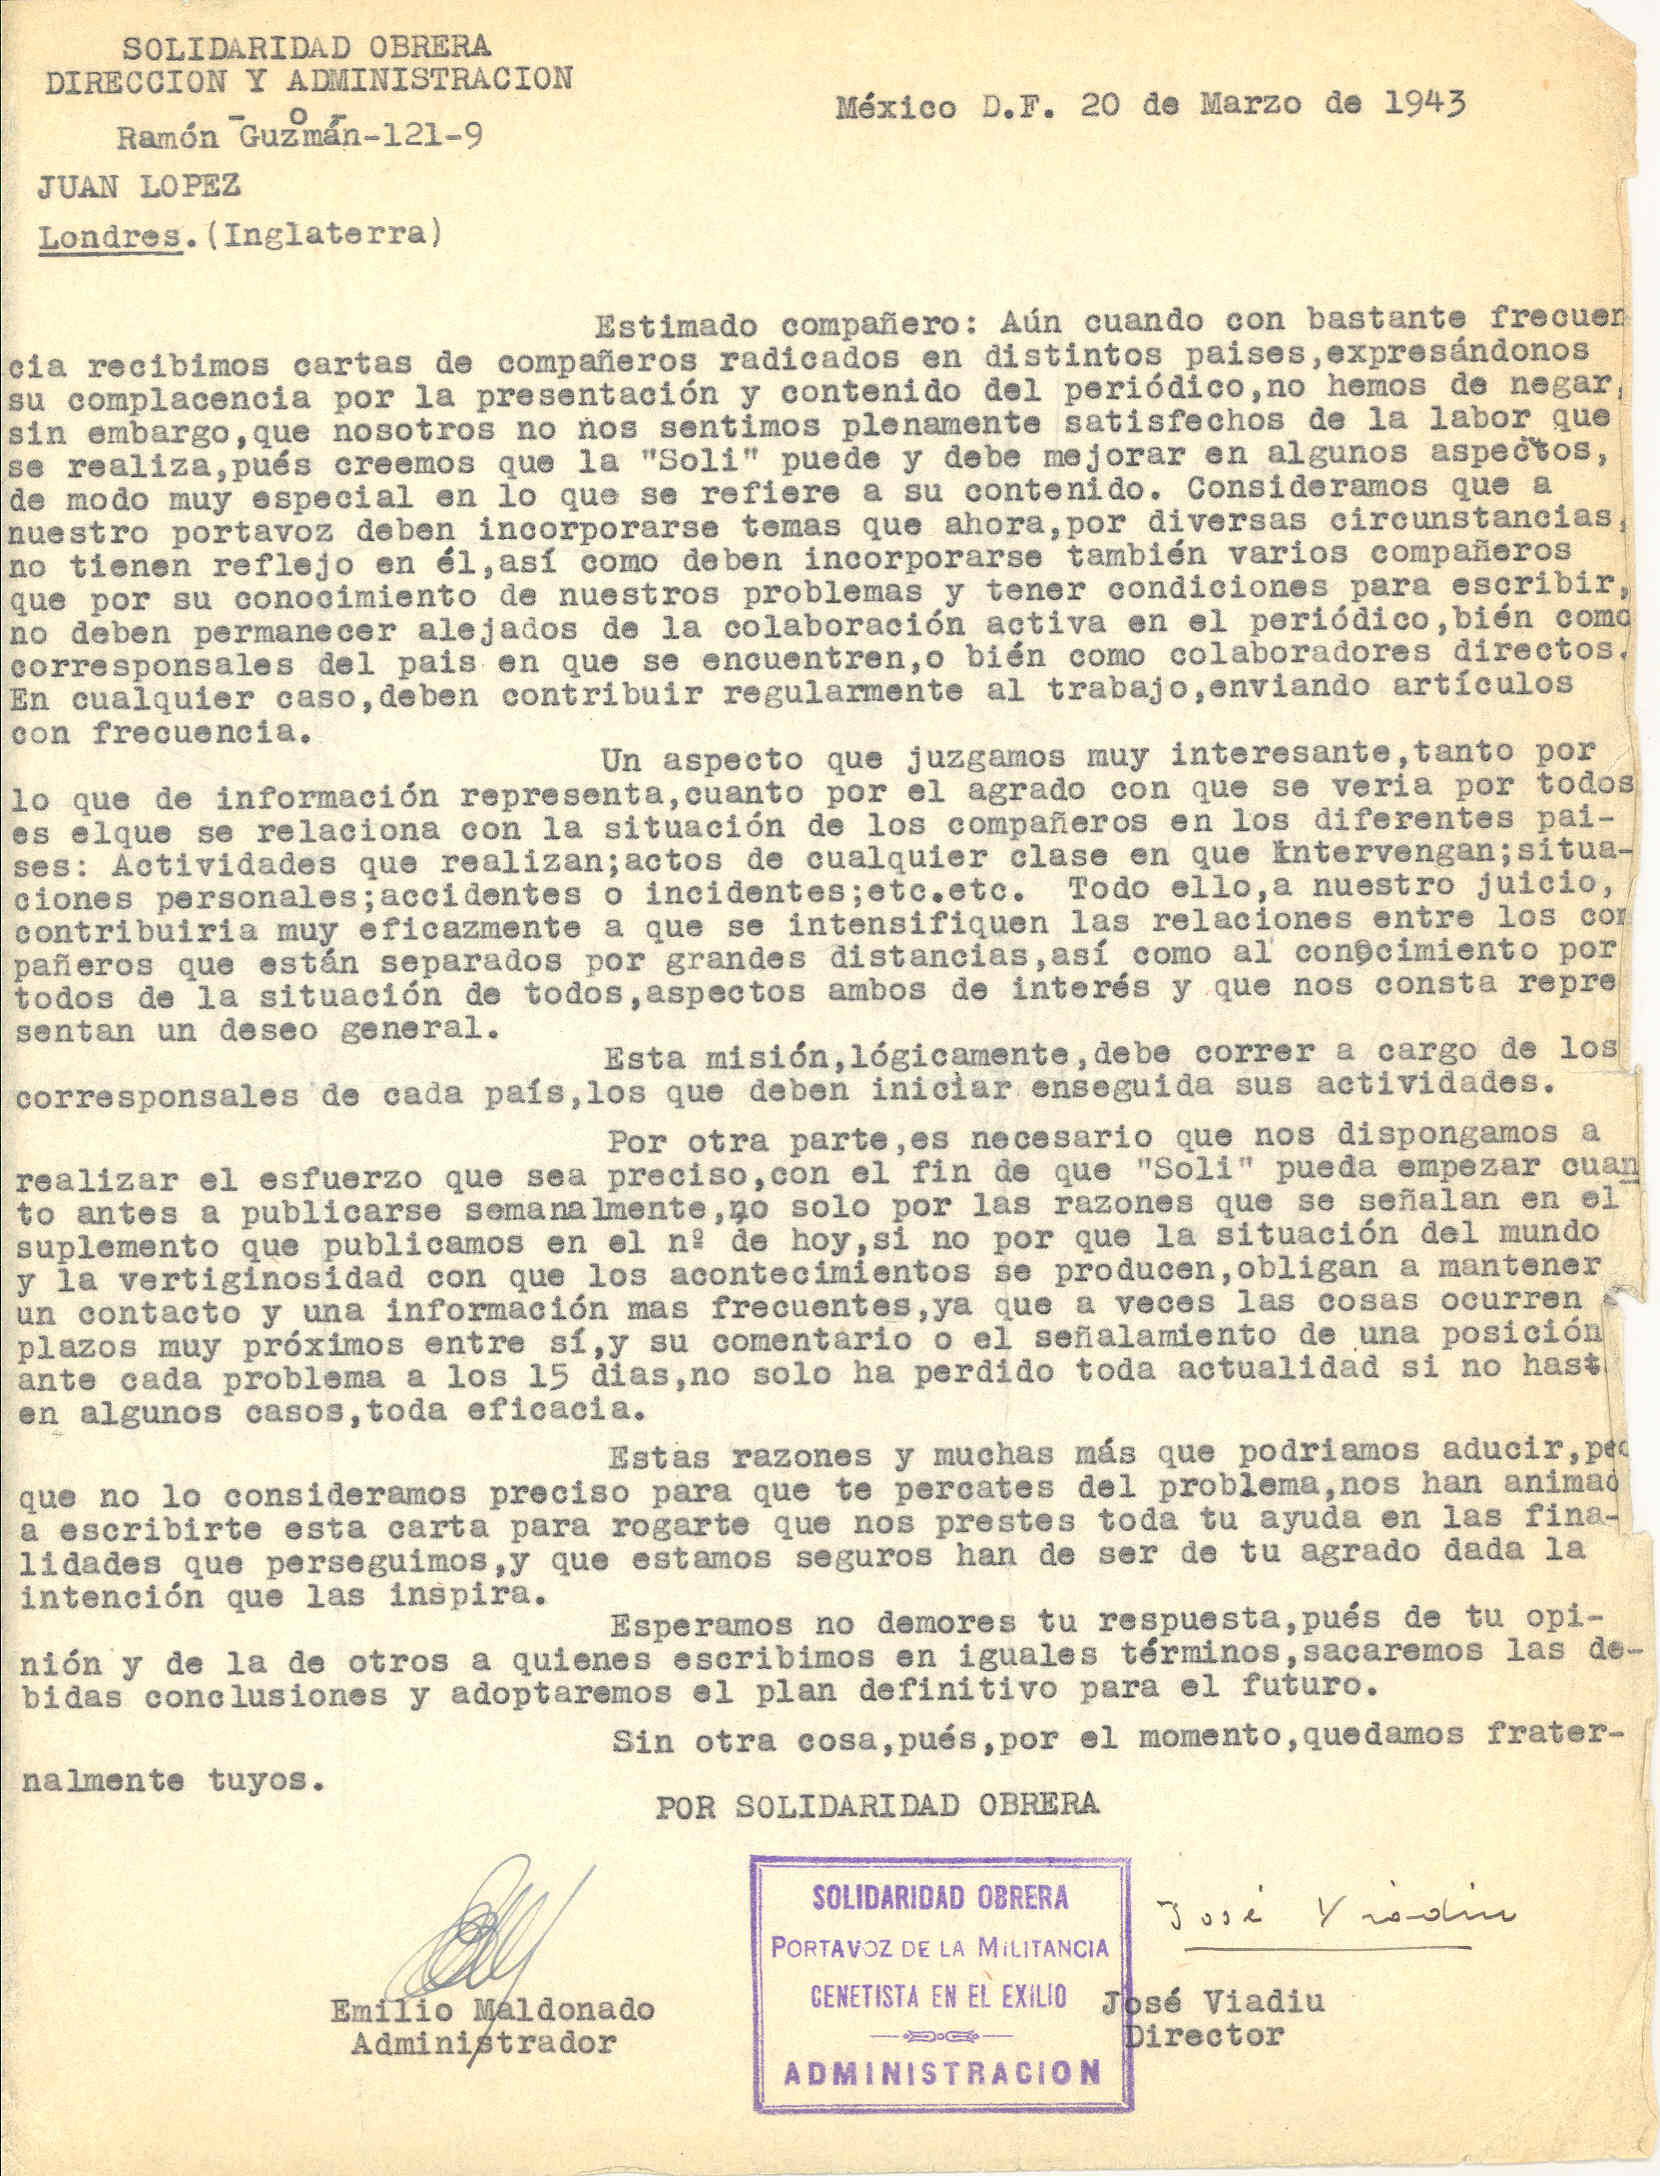 Carta de Solidaridad Obrera explicandóle la finalidad del periódico y solicitando su colaboración para cumplir sus objetivos.